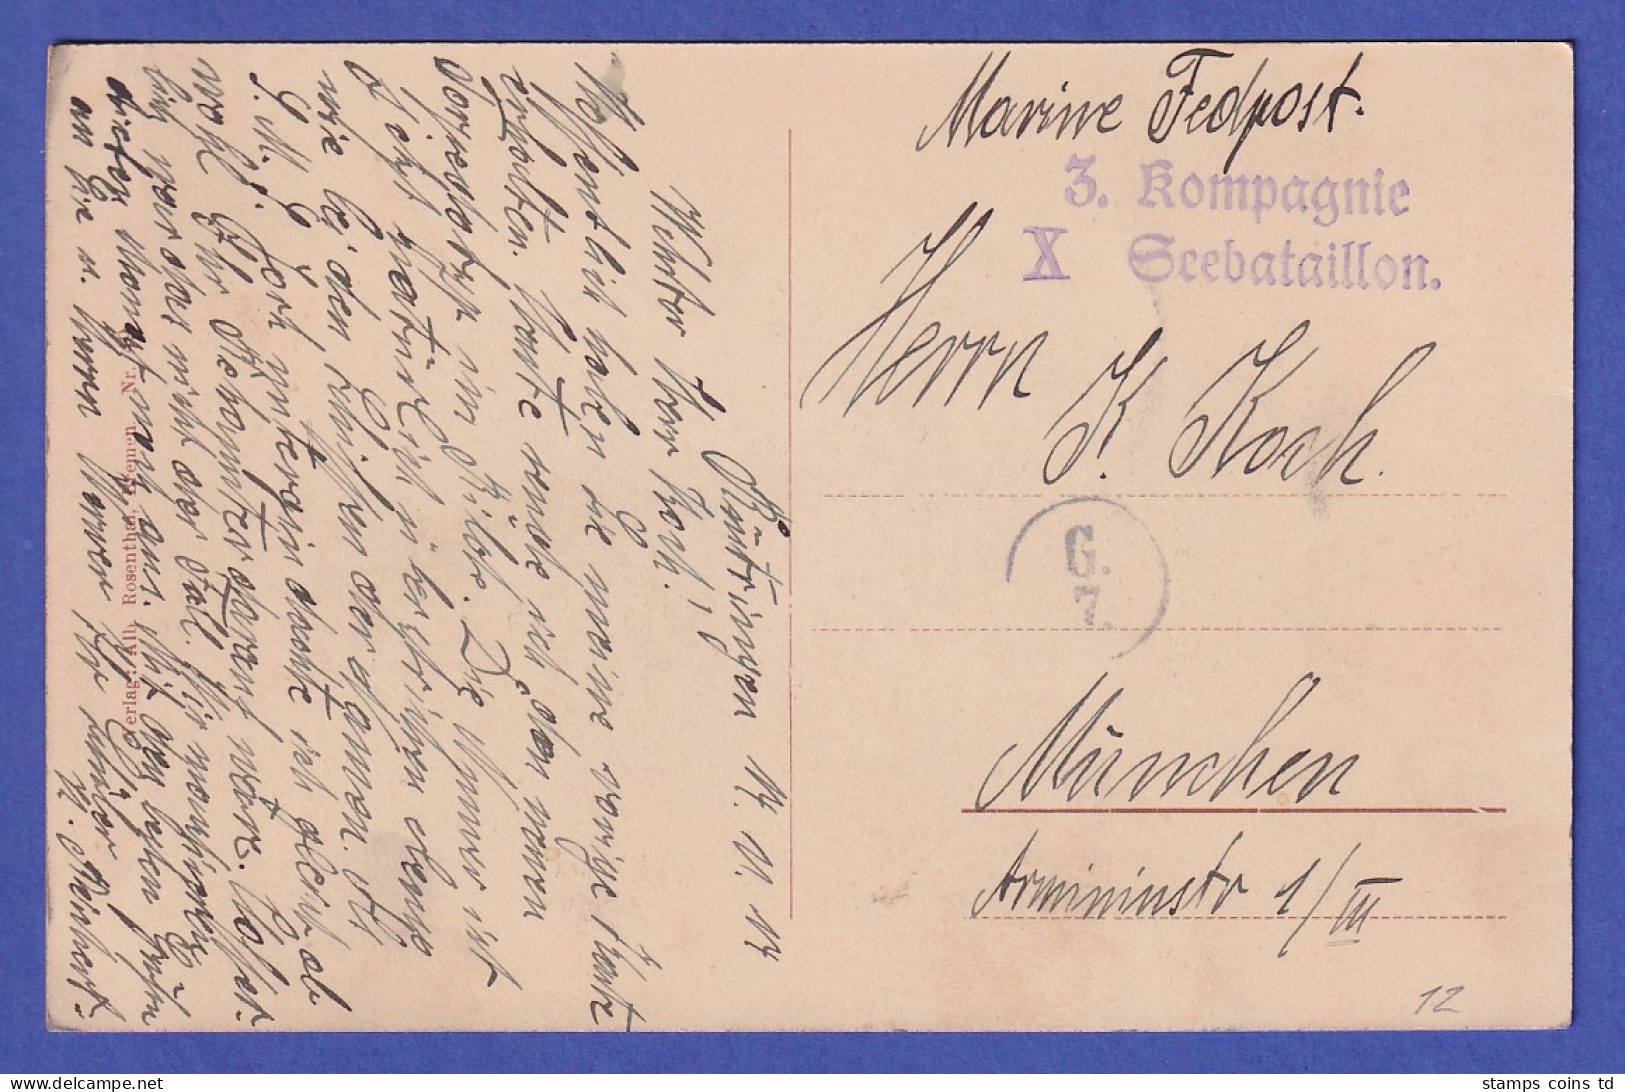 Deutsches Reich 1914 Marine-Feldpostkarte Aus Wilhelmshaven - Torpedoboot - Feldpost (postage Free)